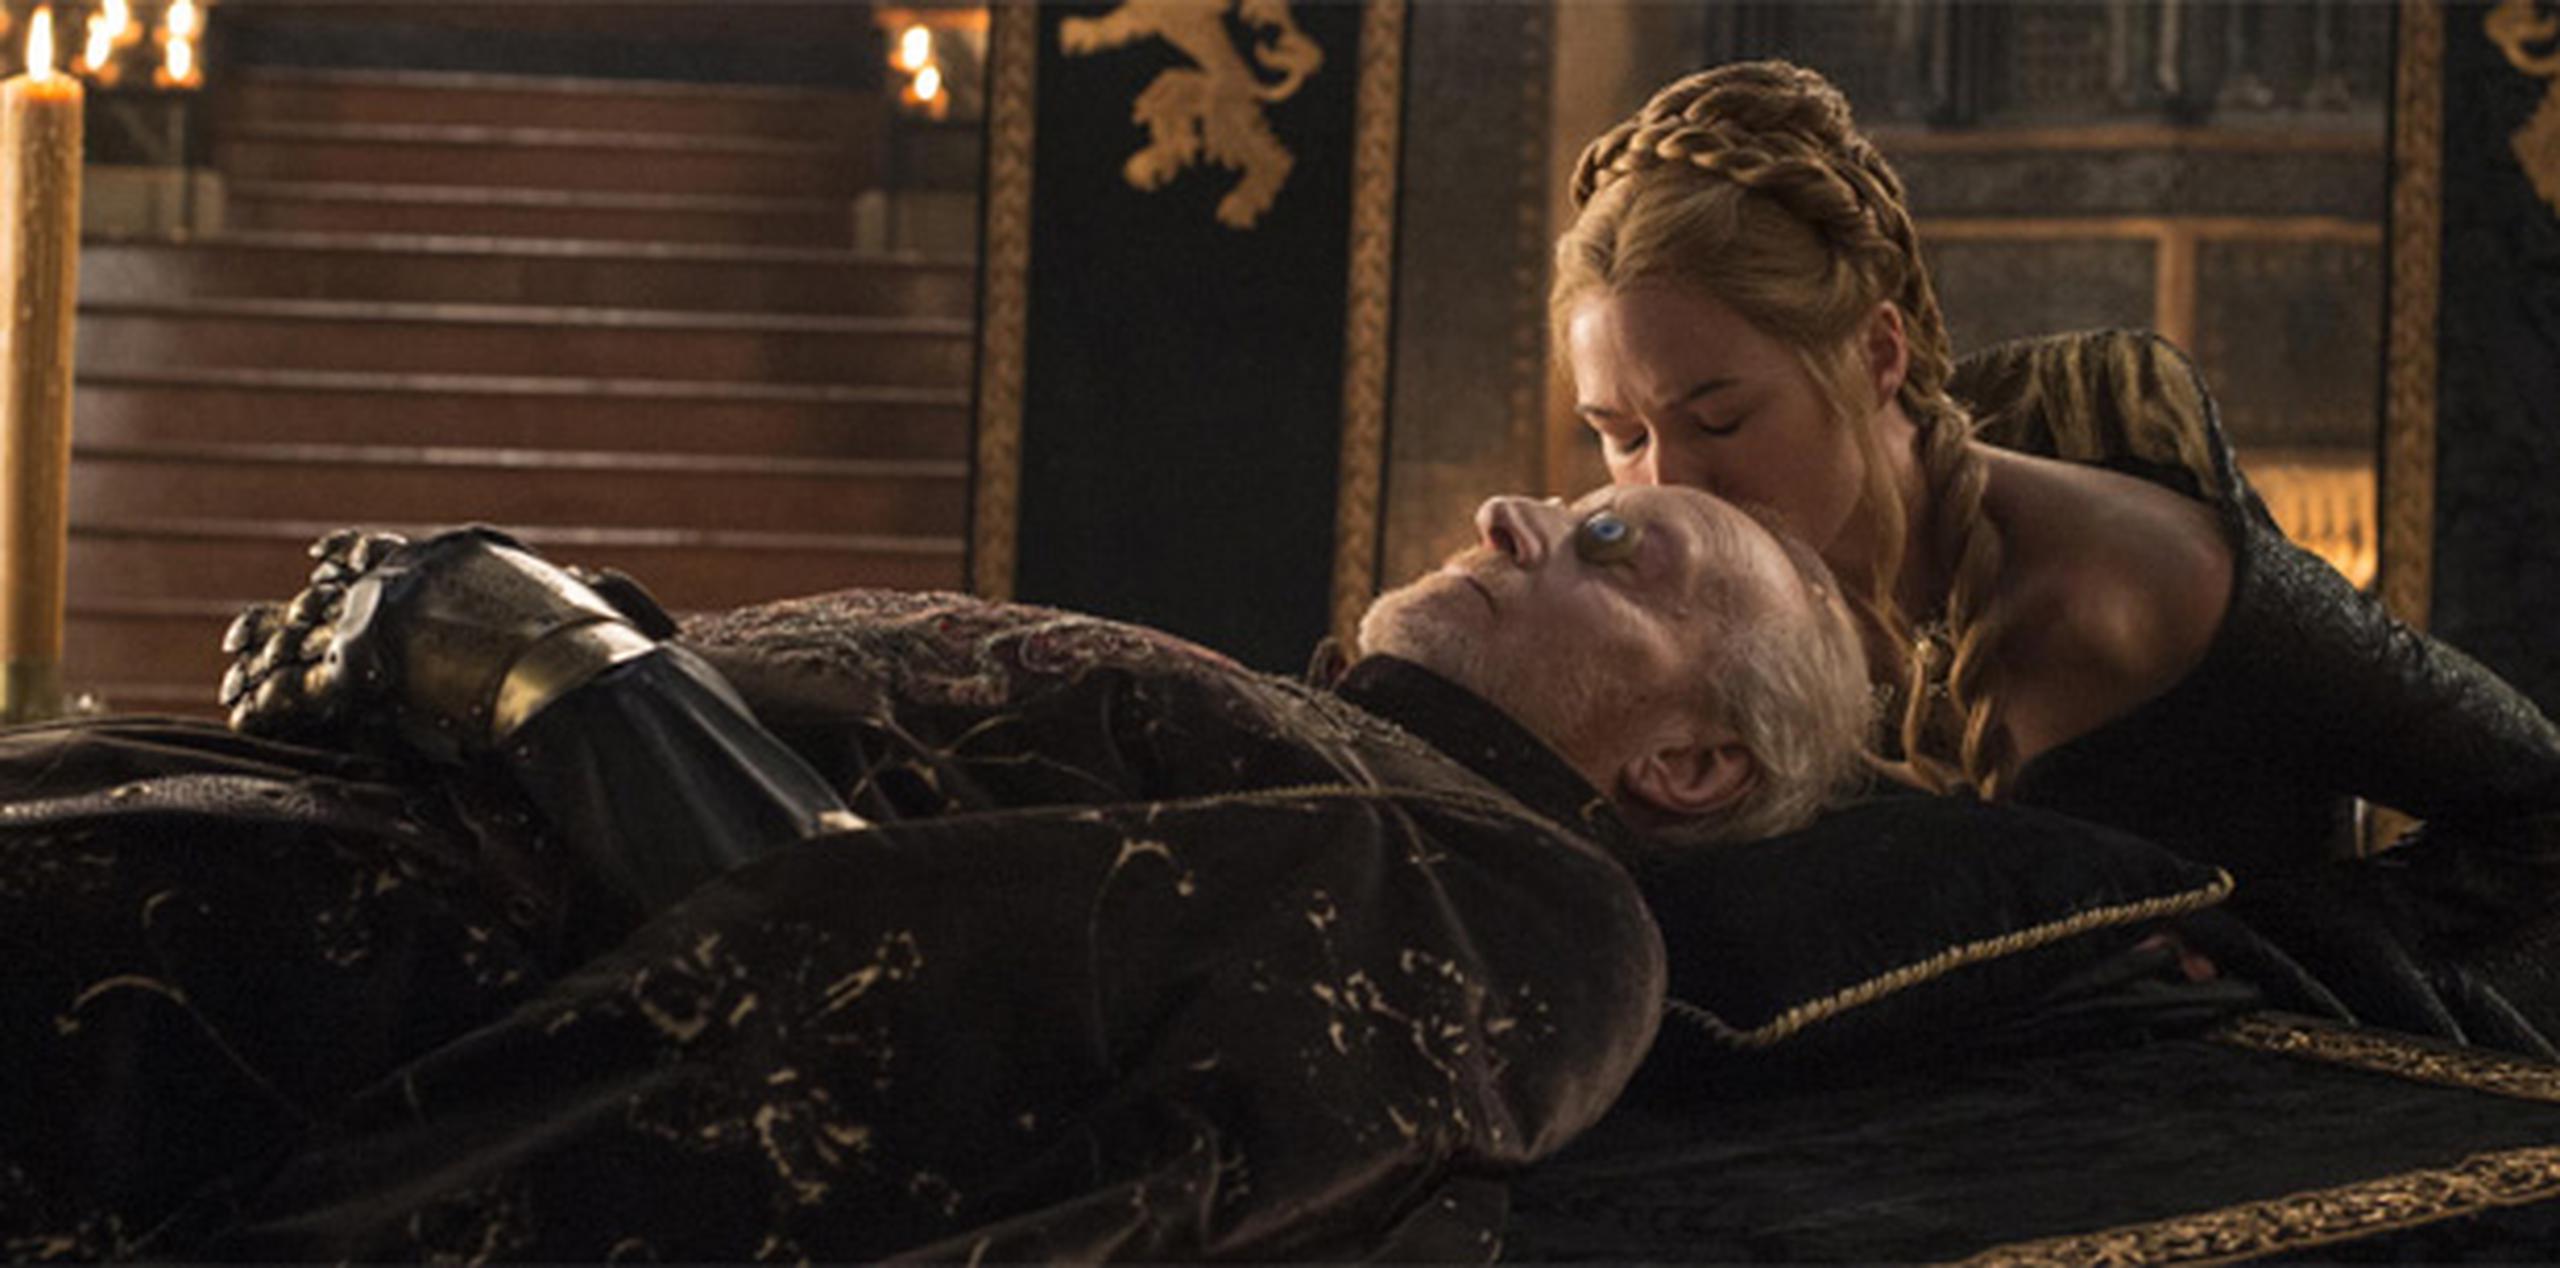 La muerte de Tywin Lannister la pasada temporada tendrá profundas repercusiones en los nuevos episodios de la serie. (HBO)